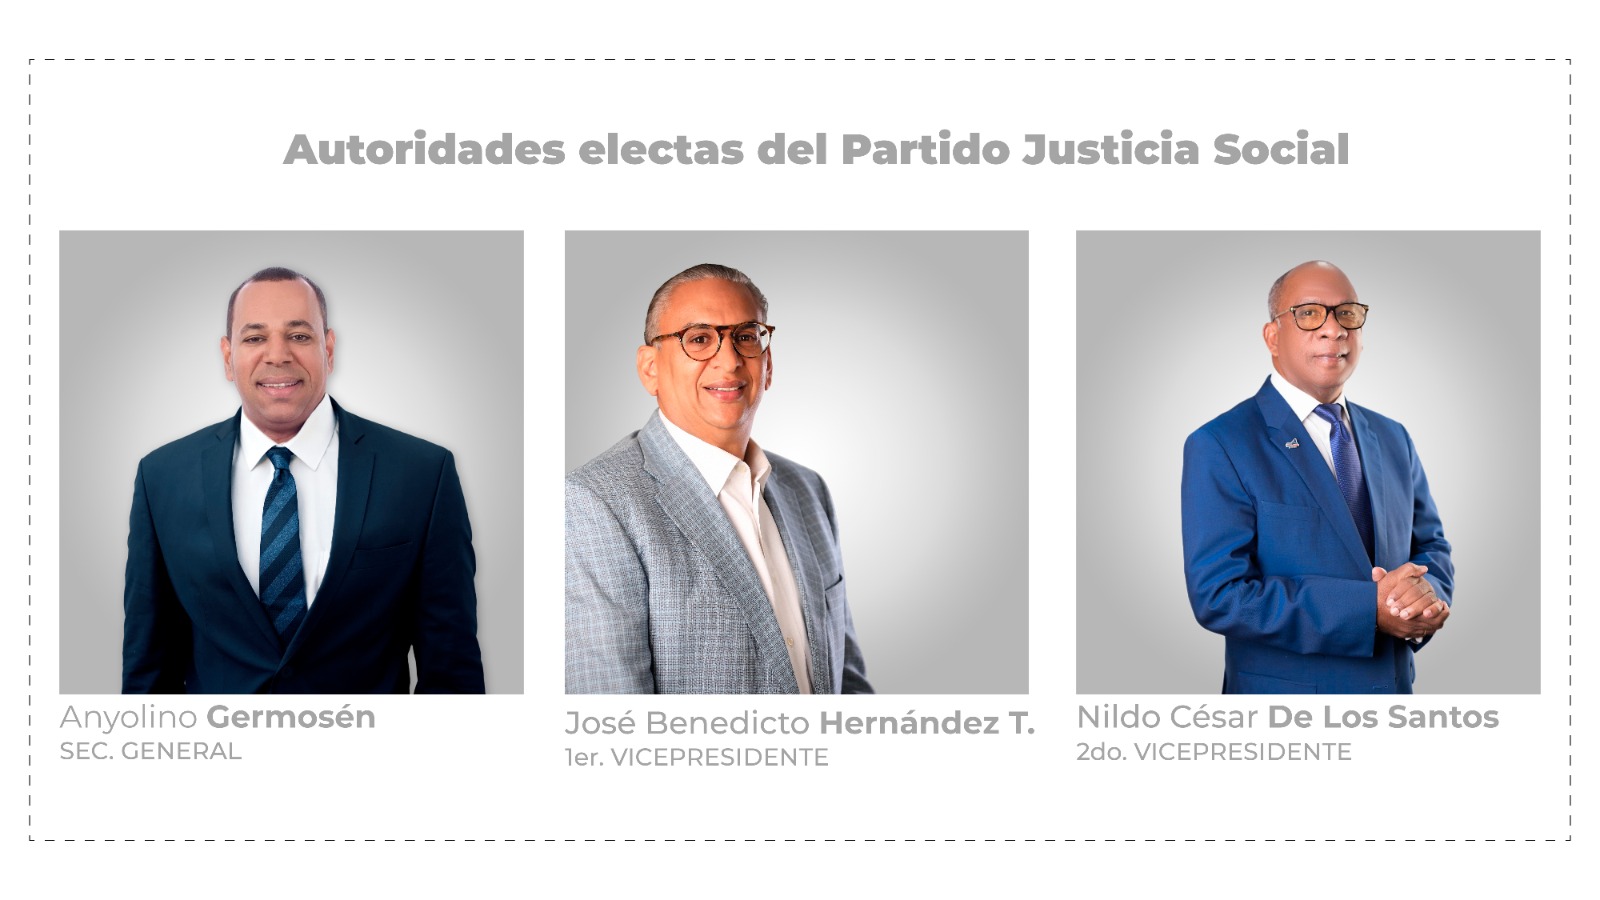 Partido Justicia Social (JS) establece su liderazgo con un Secretario General y dos Vicepresidentes